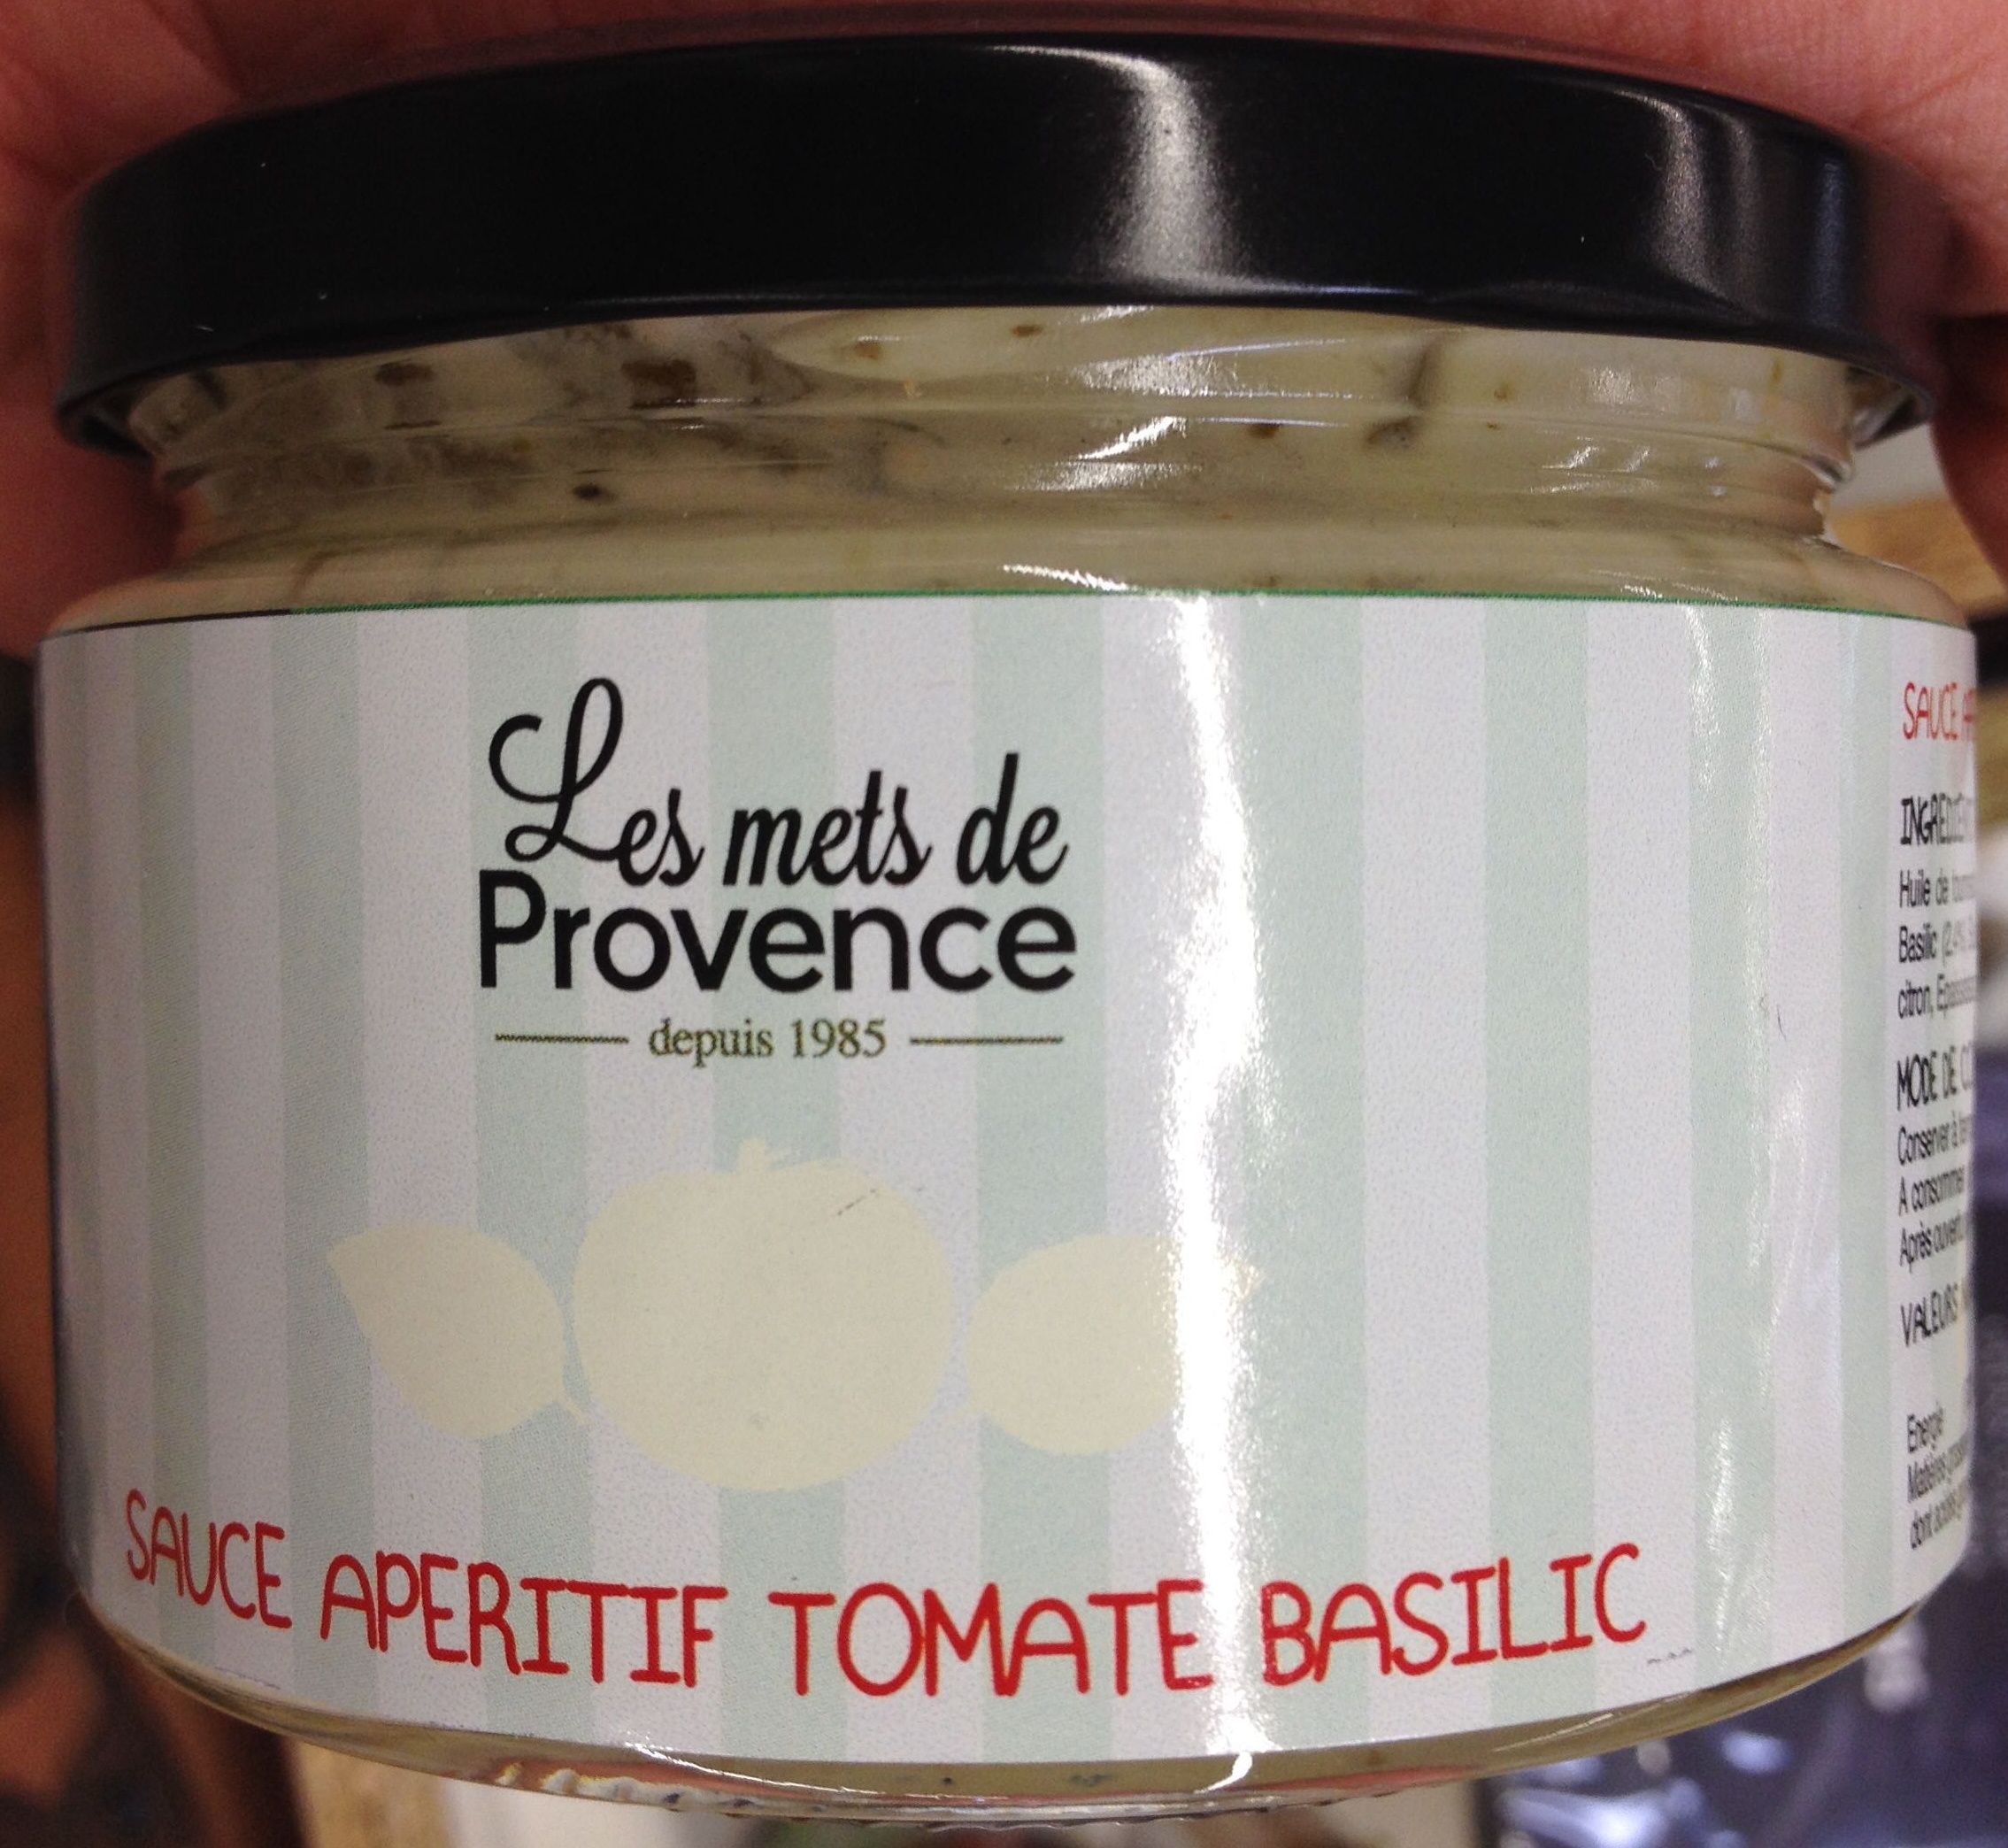 Sauce apéritif tomate basilic - Product - fr